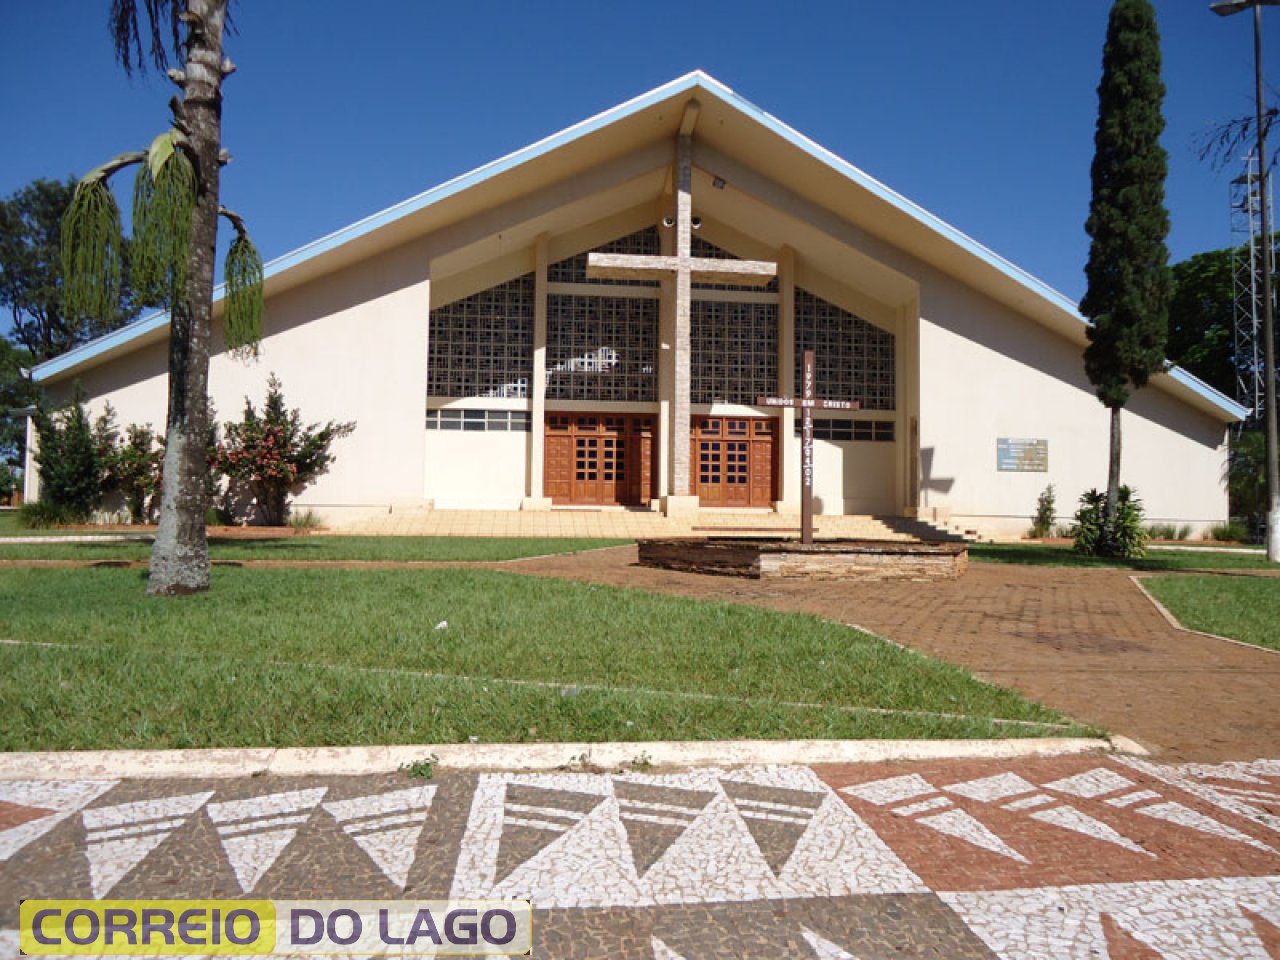 Igreja Matriz Católica de Santa Helena. Construída em 1982. José Carvalho da Silva auxiliou na construção como pedreiro.